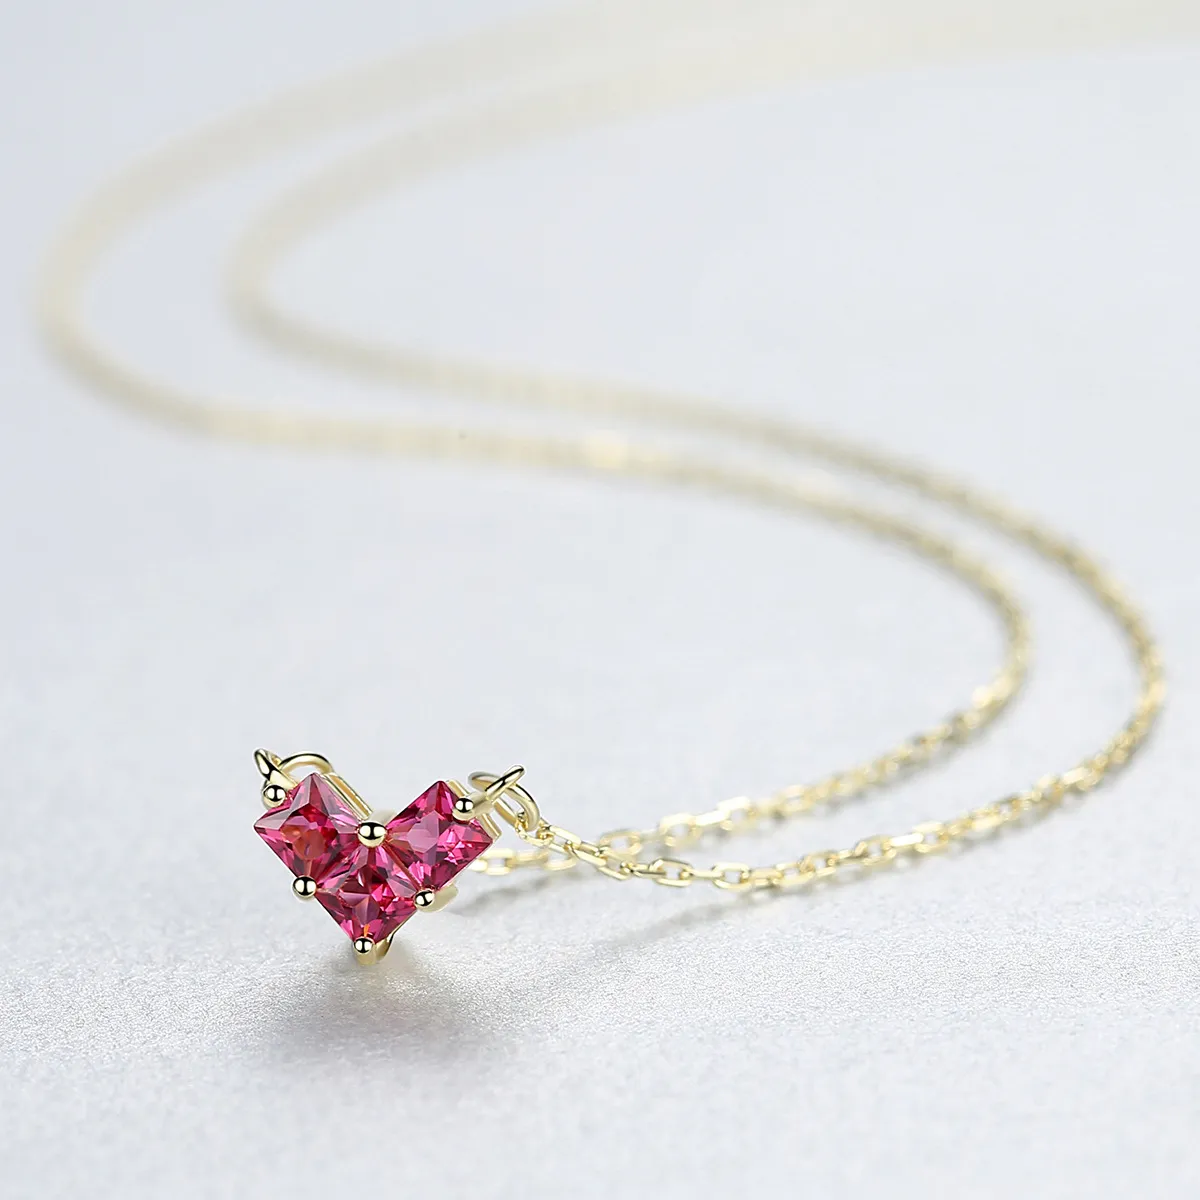 Small delicate shiny zircon love s925 silver pendant necklace Korean fashion lady luxury collar chain temperament necklace accessory gift